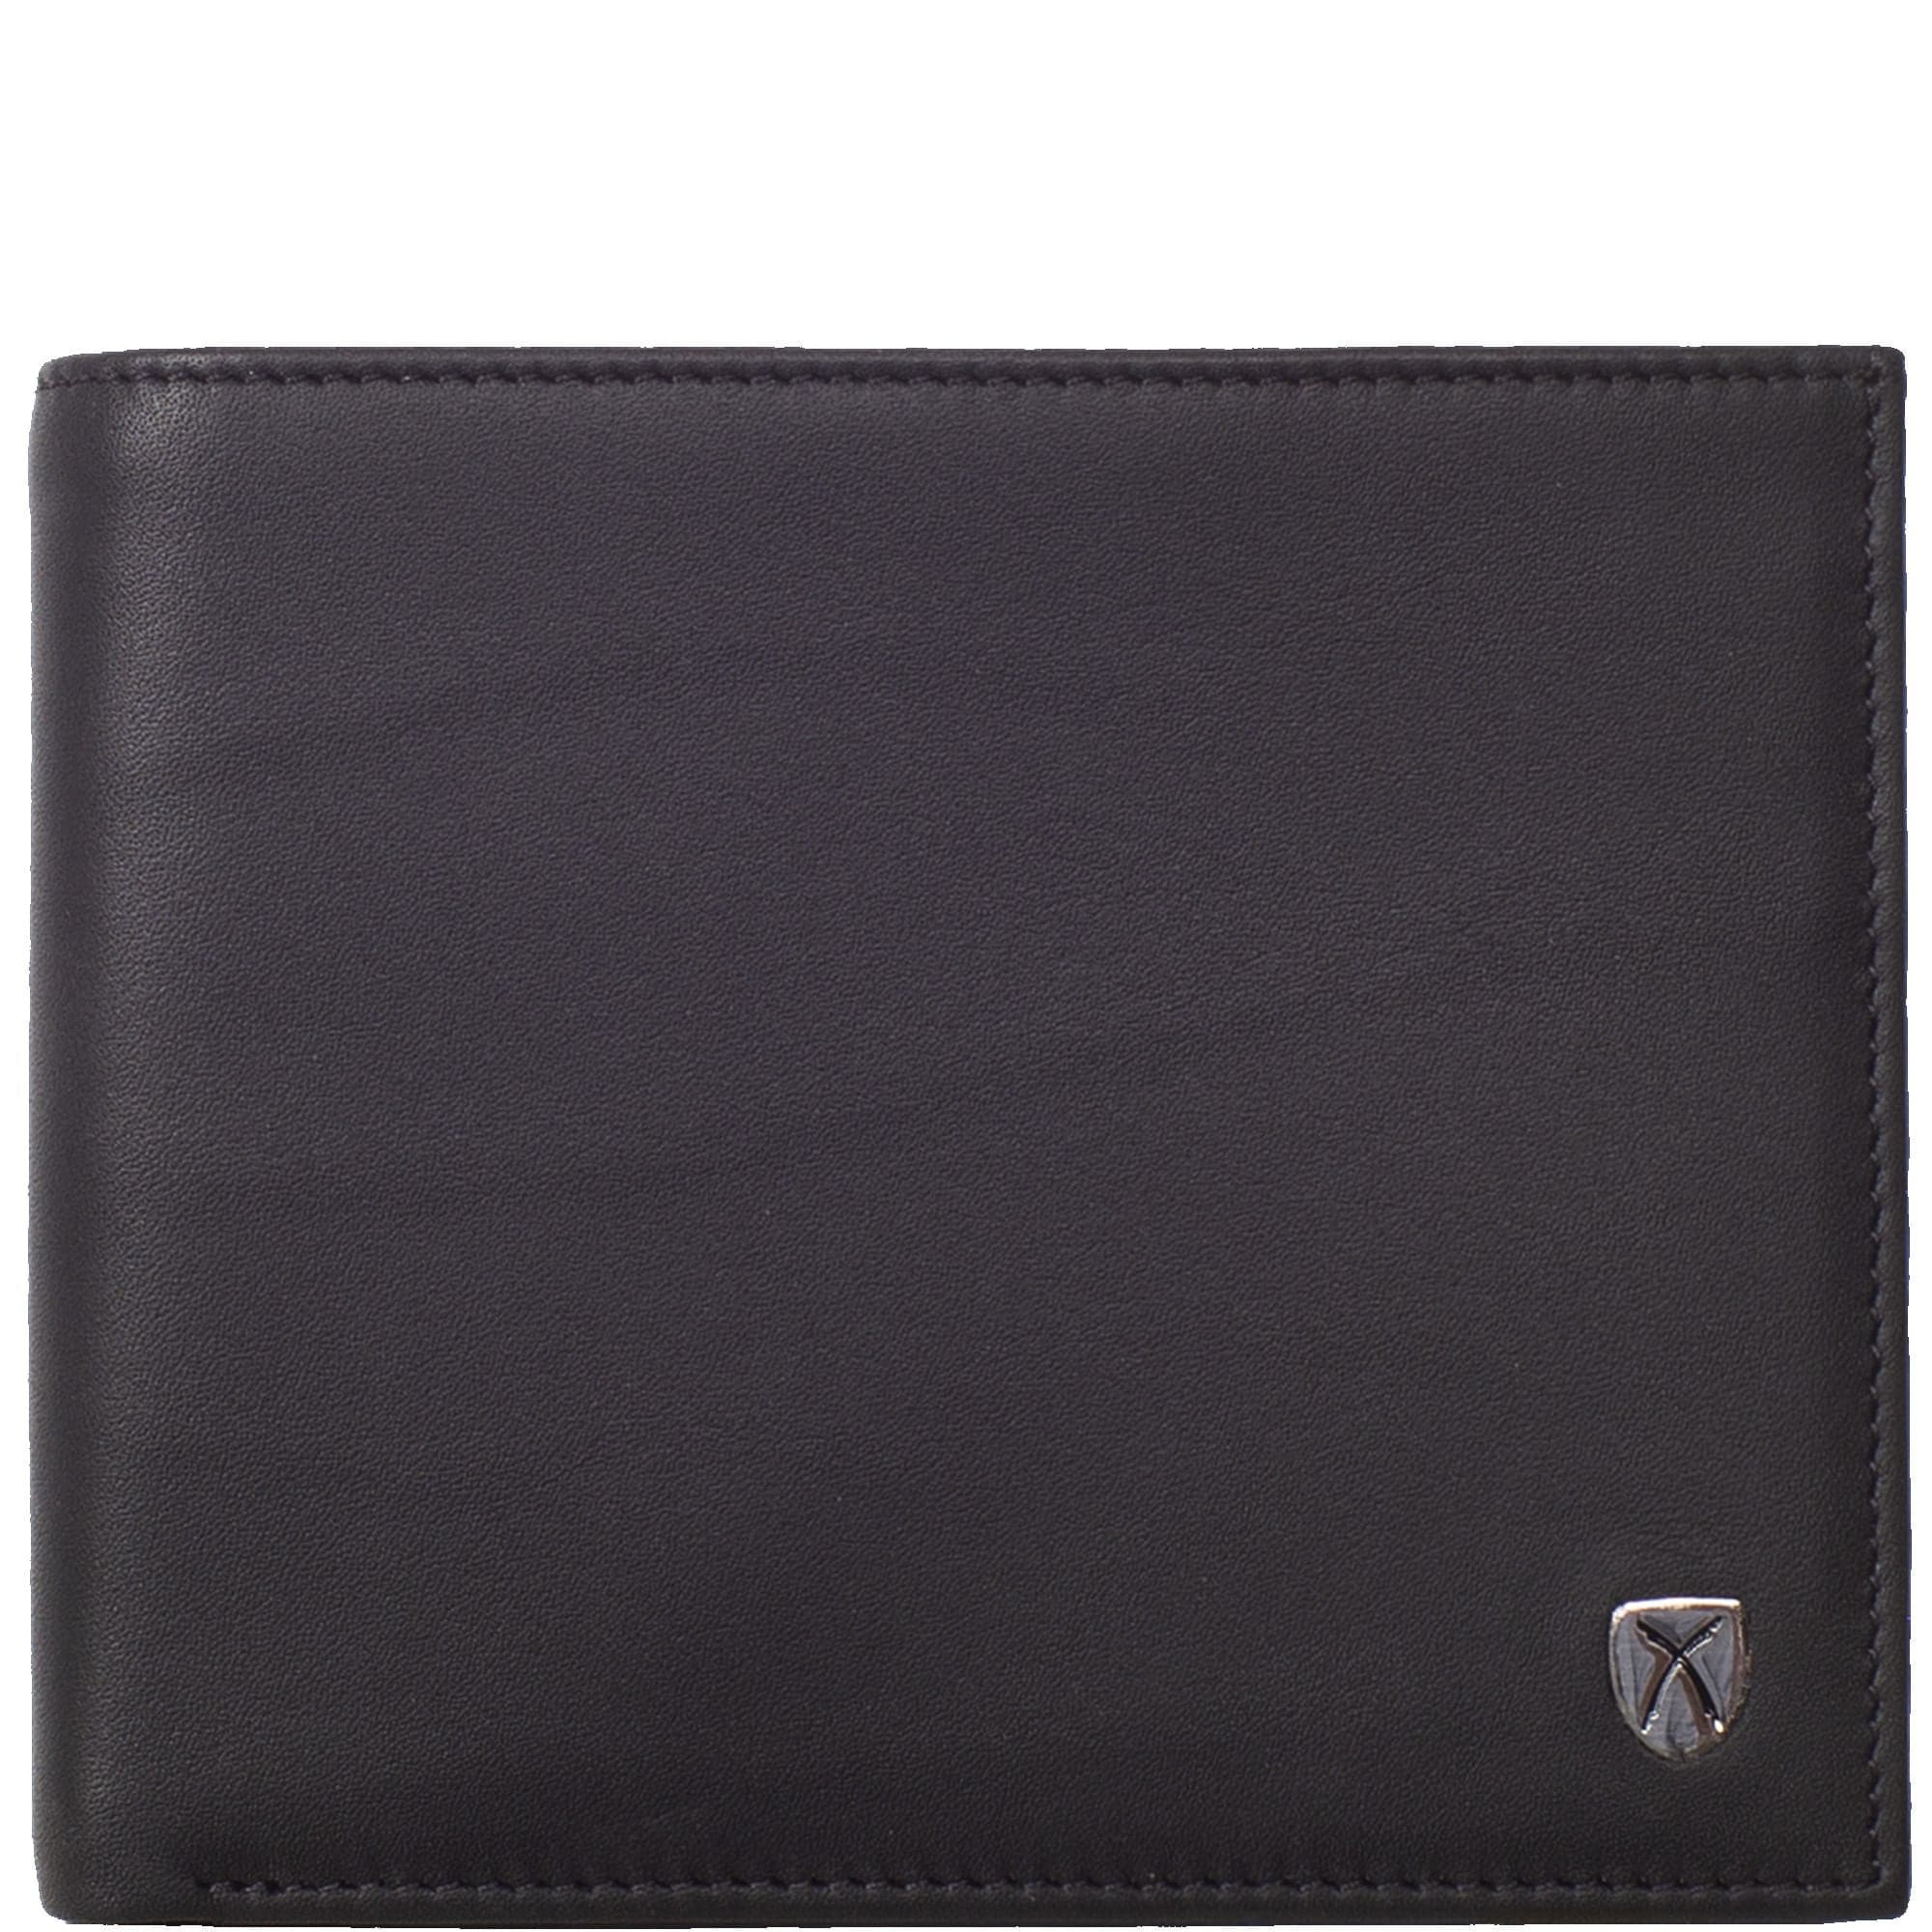 Geldbörse Portemonnaie Leder schwarz mit innen Reißverschluß